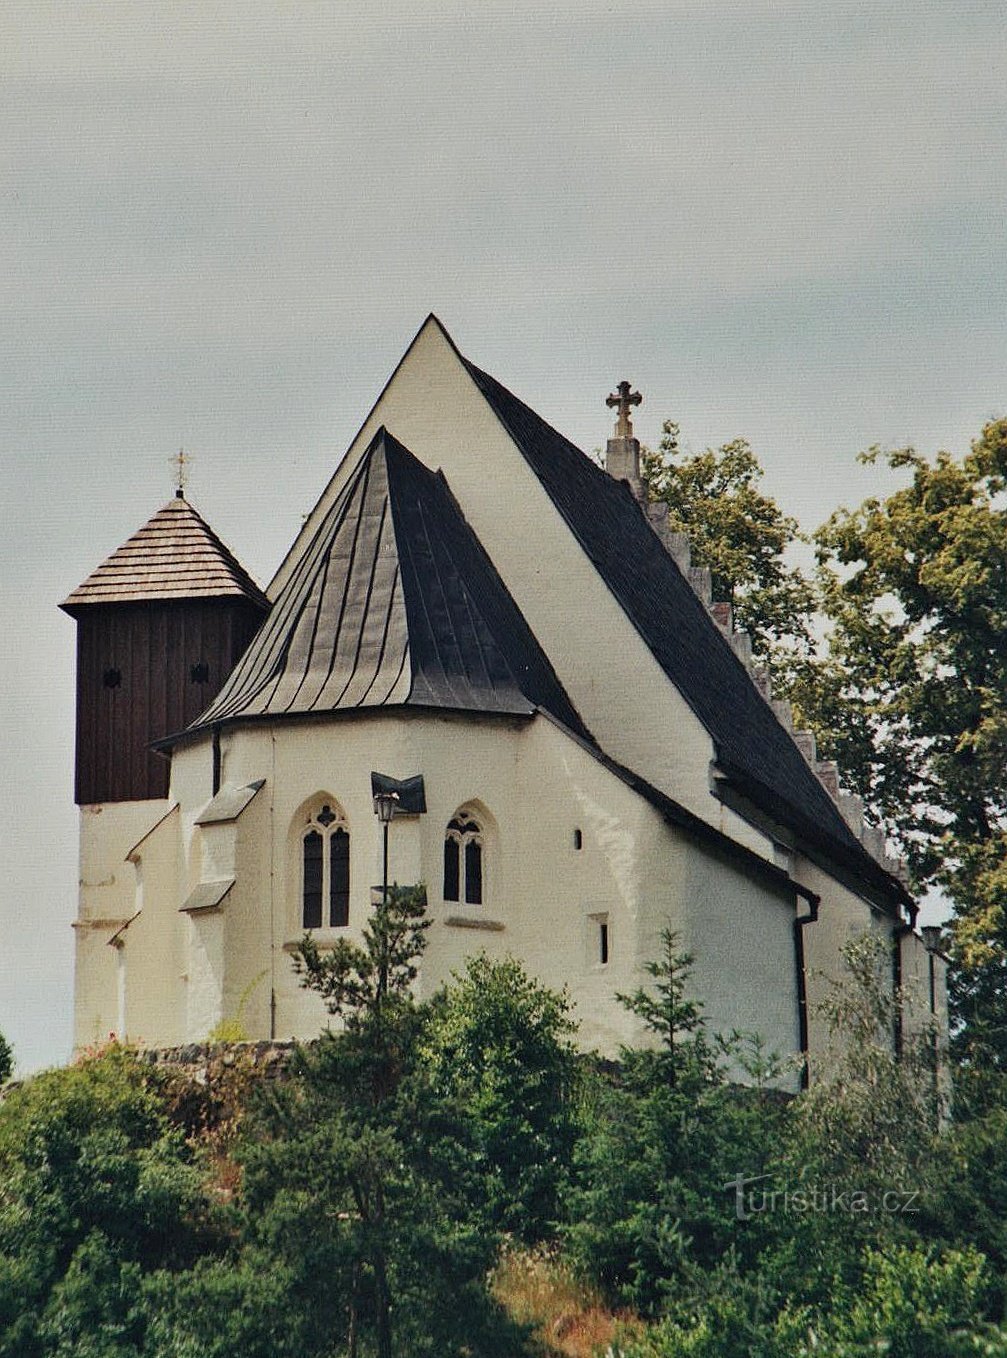 Μια ελαφρώς θλιβερή ανάμνηση μιας εκκλησίας ή όταν στην St. Kateřina St. Η Κατερίνα δεν είναι